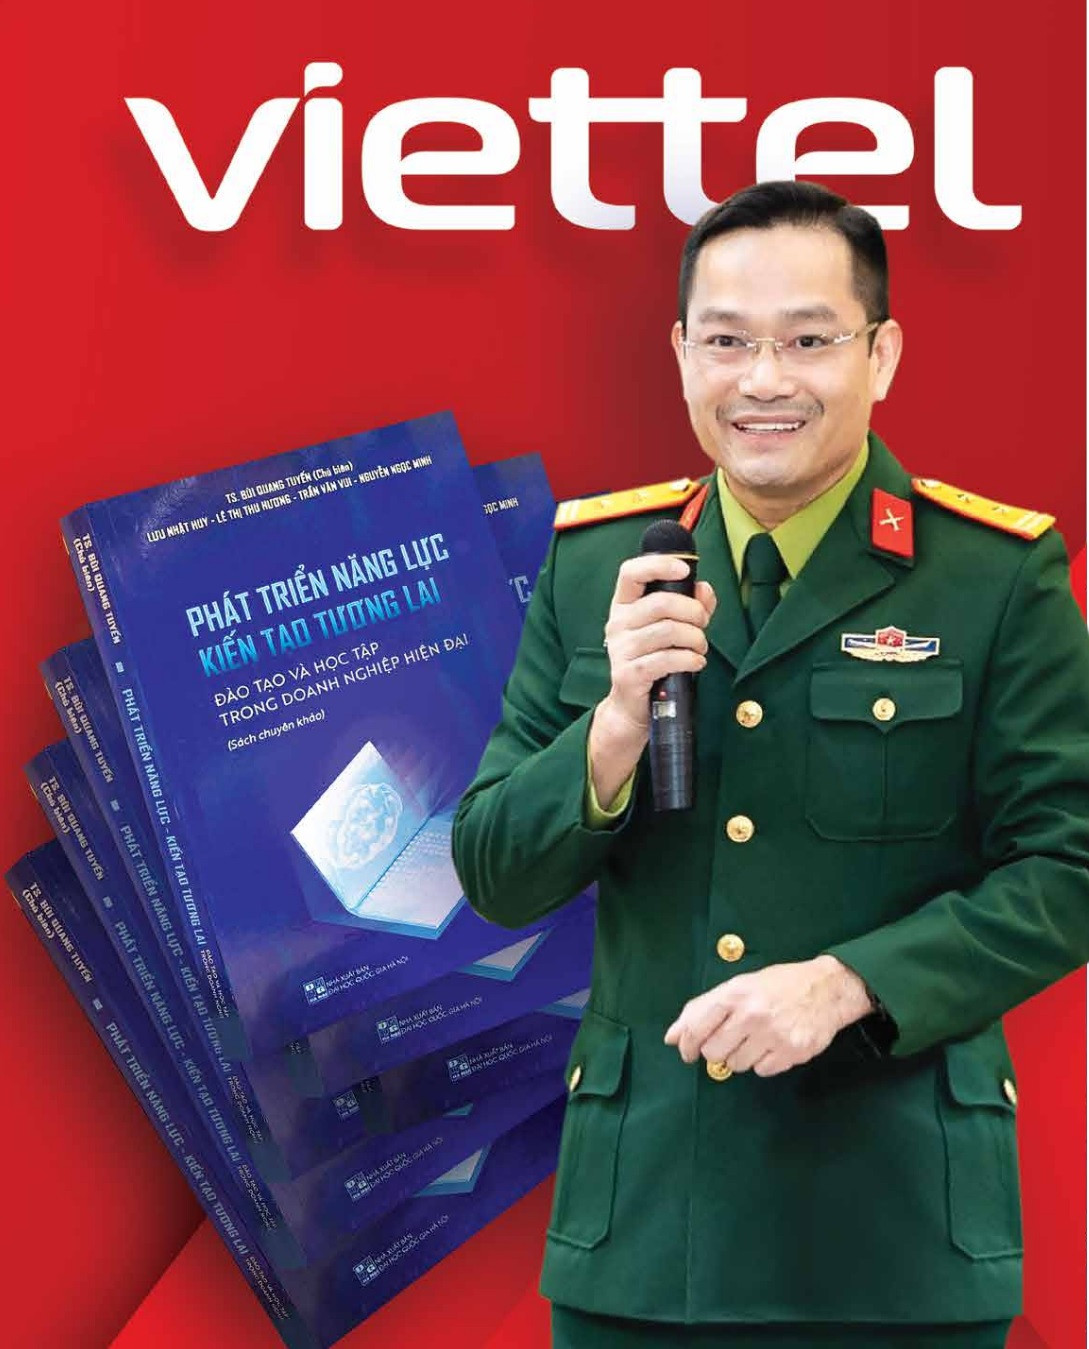 Giám đốc Học viện Viettel Bùi Quang Tuyến: 